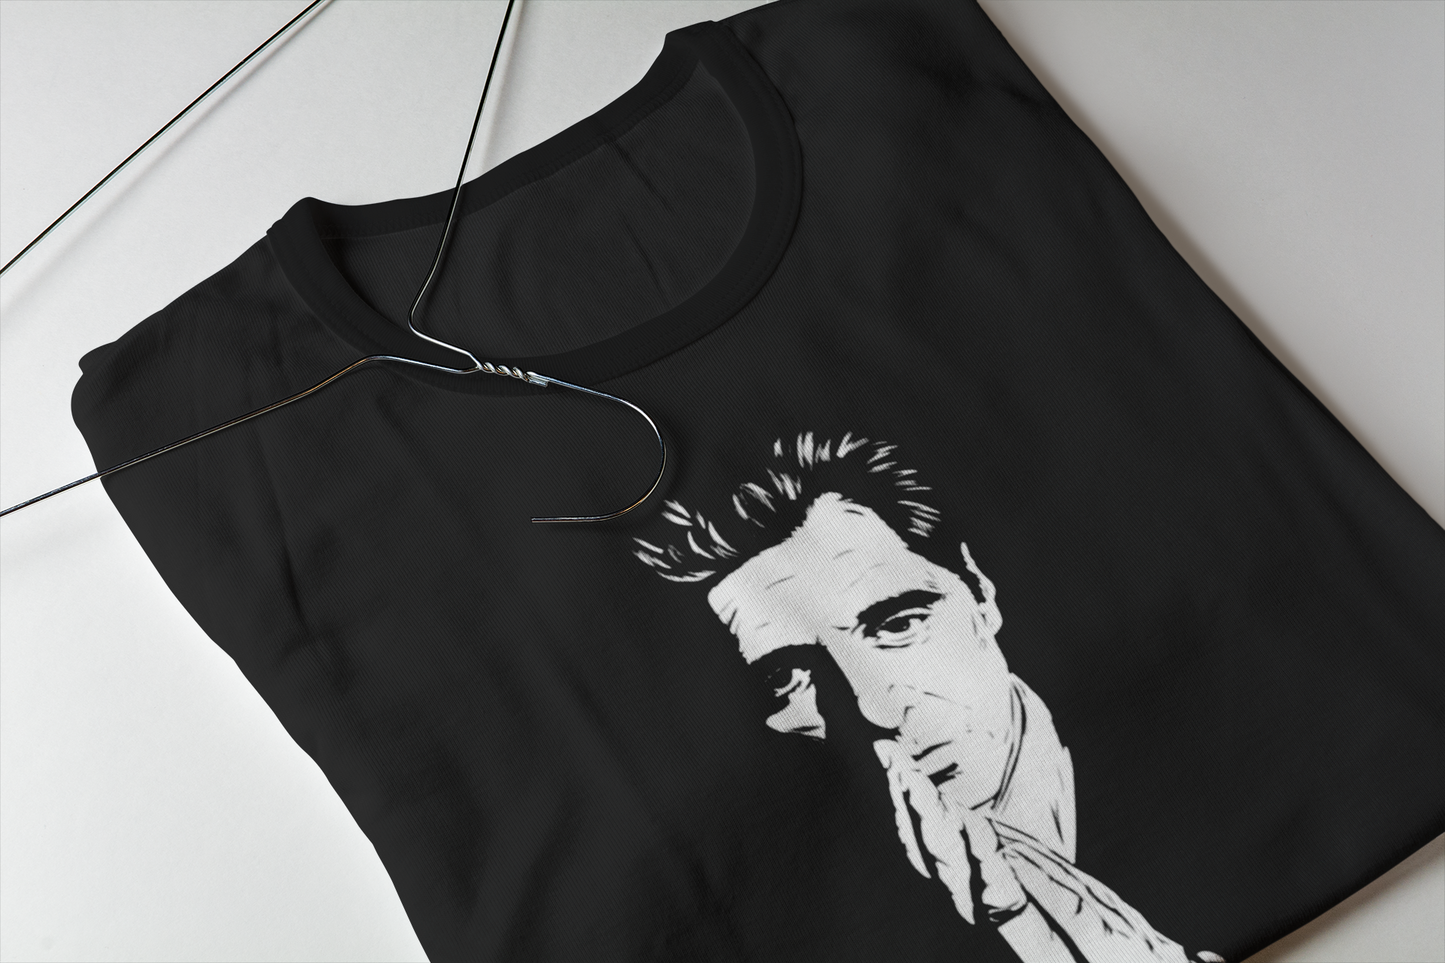 Camiseta Michael Corleone - "O Poderoso Chefão" (The Godfather) - Filmes